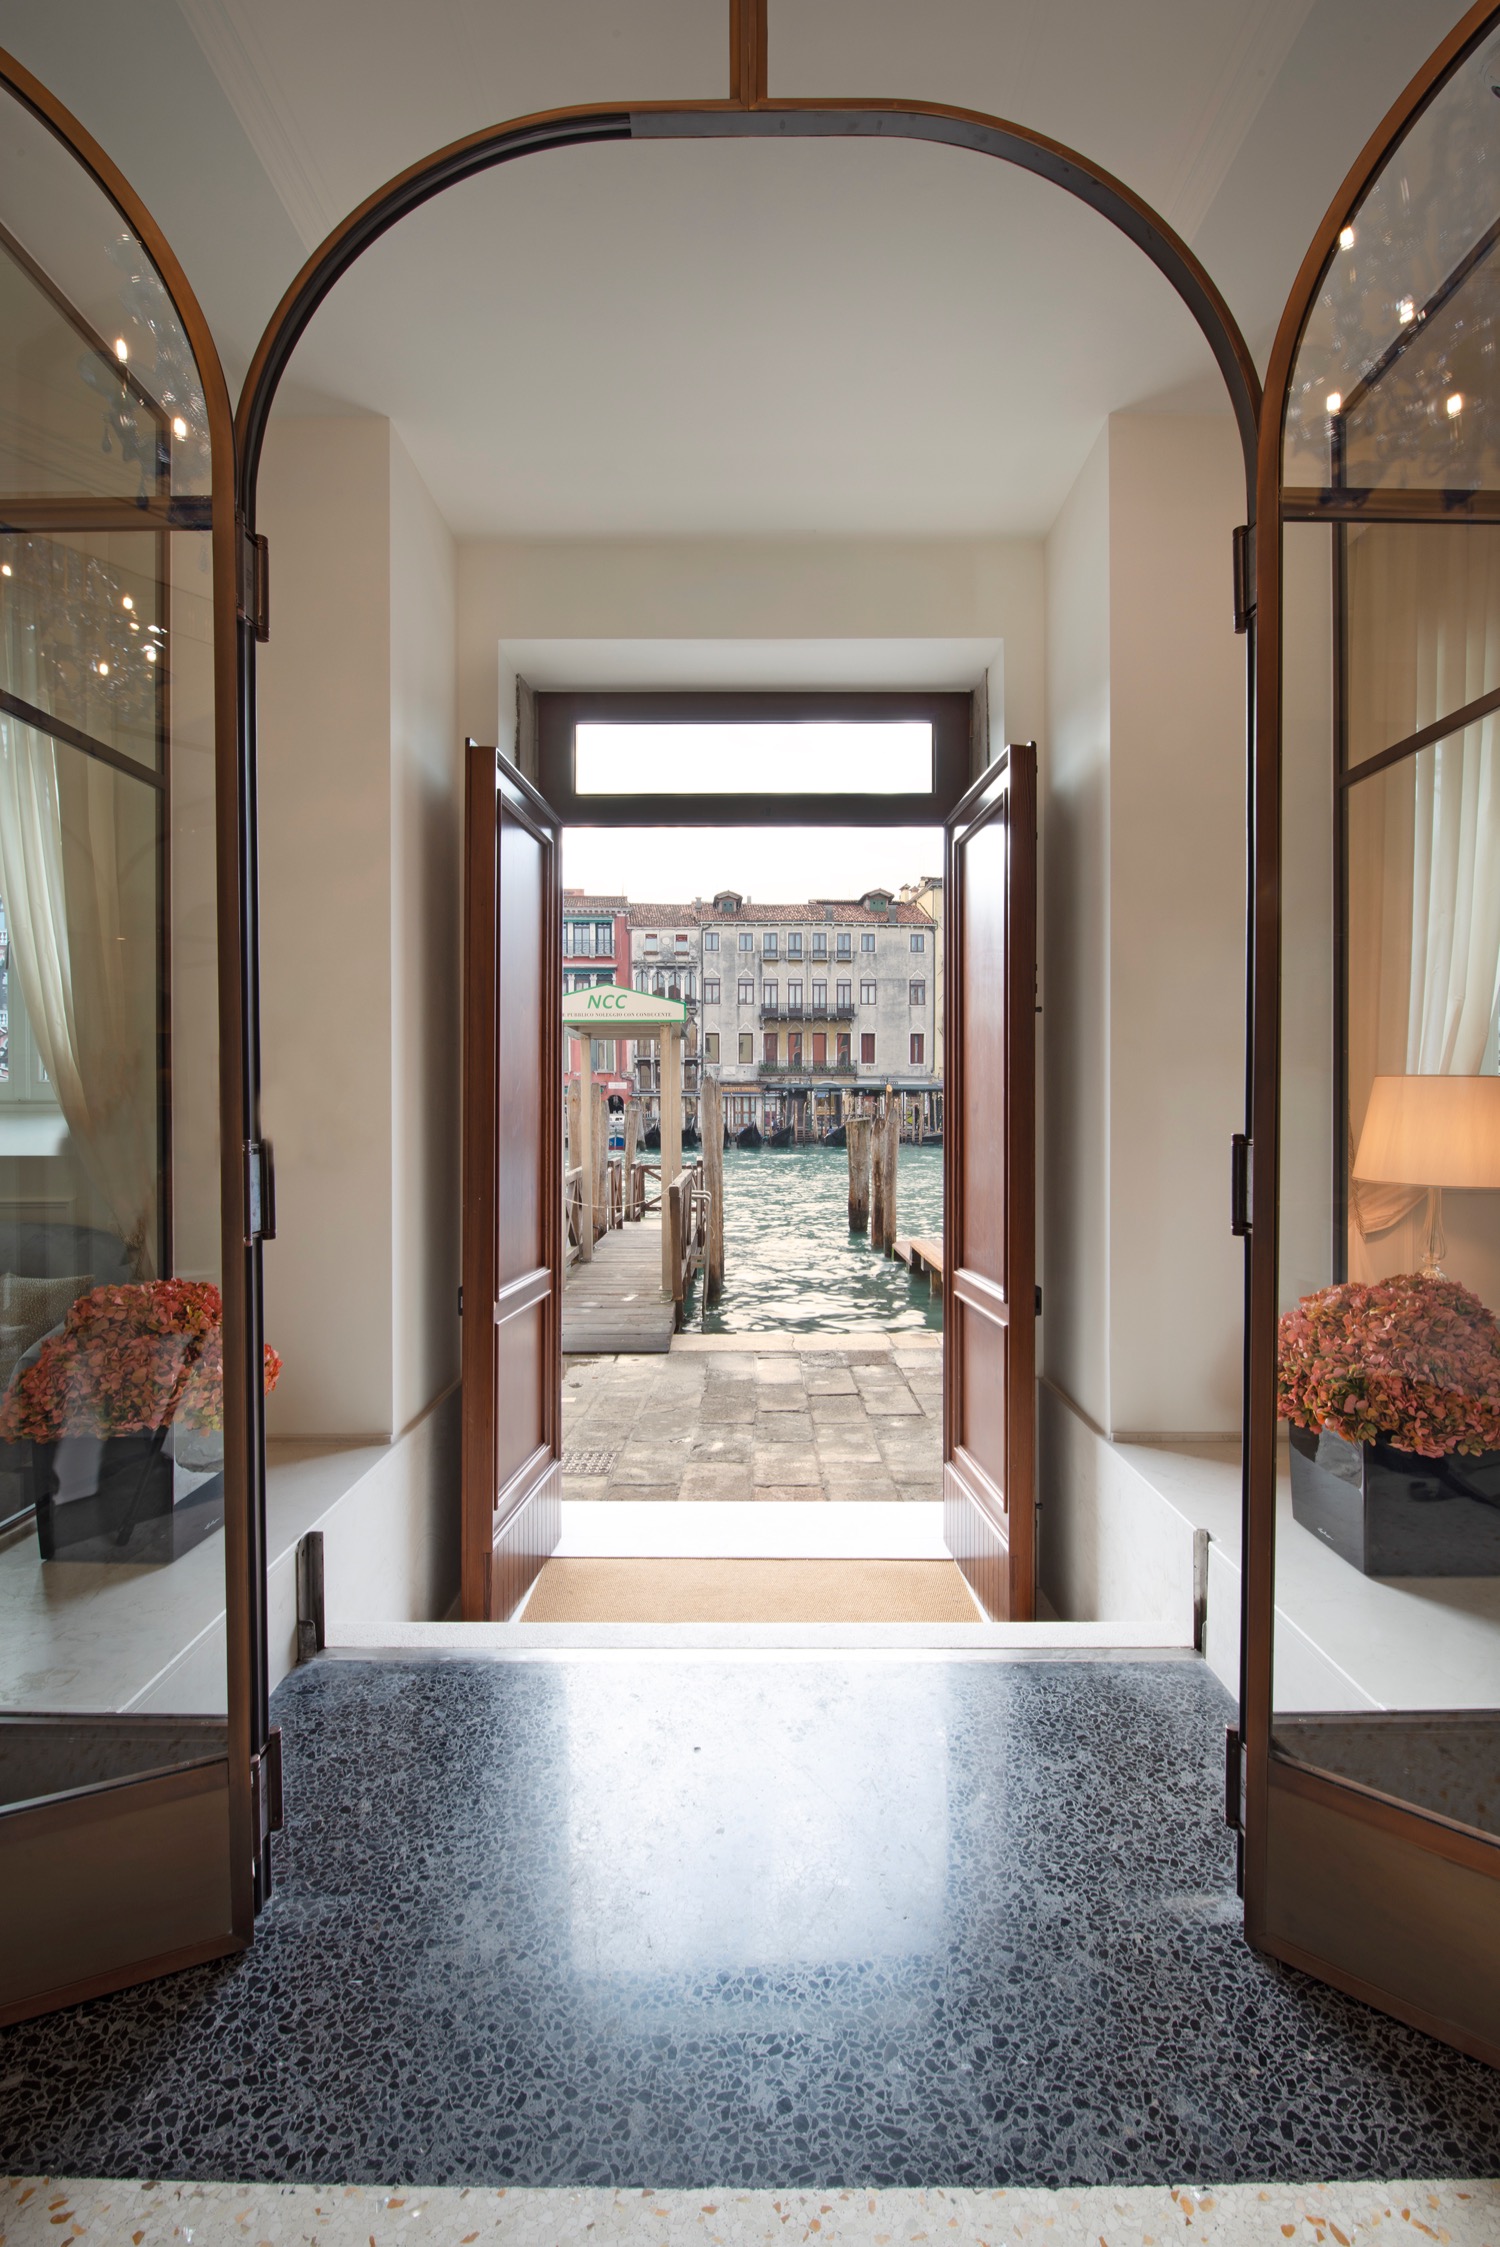 New To Venice – H10 Palazzo Canova